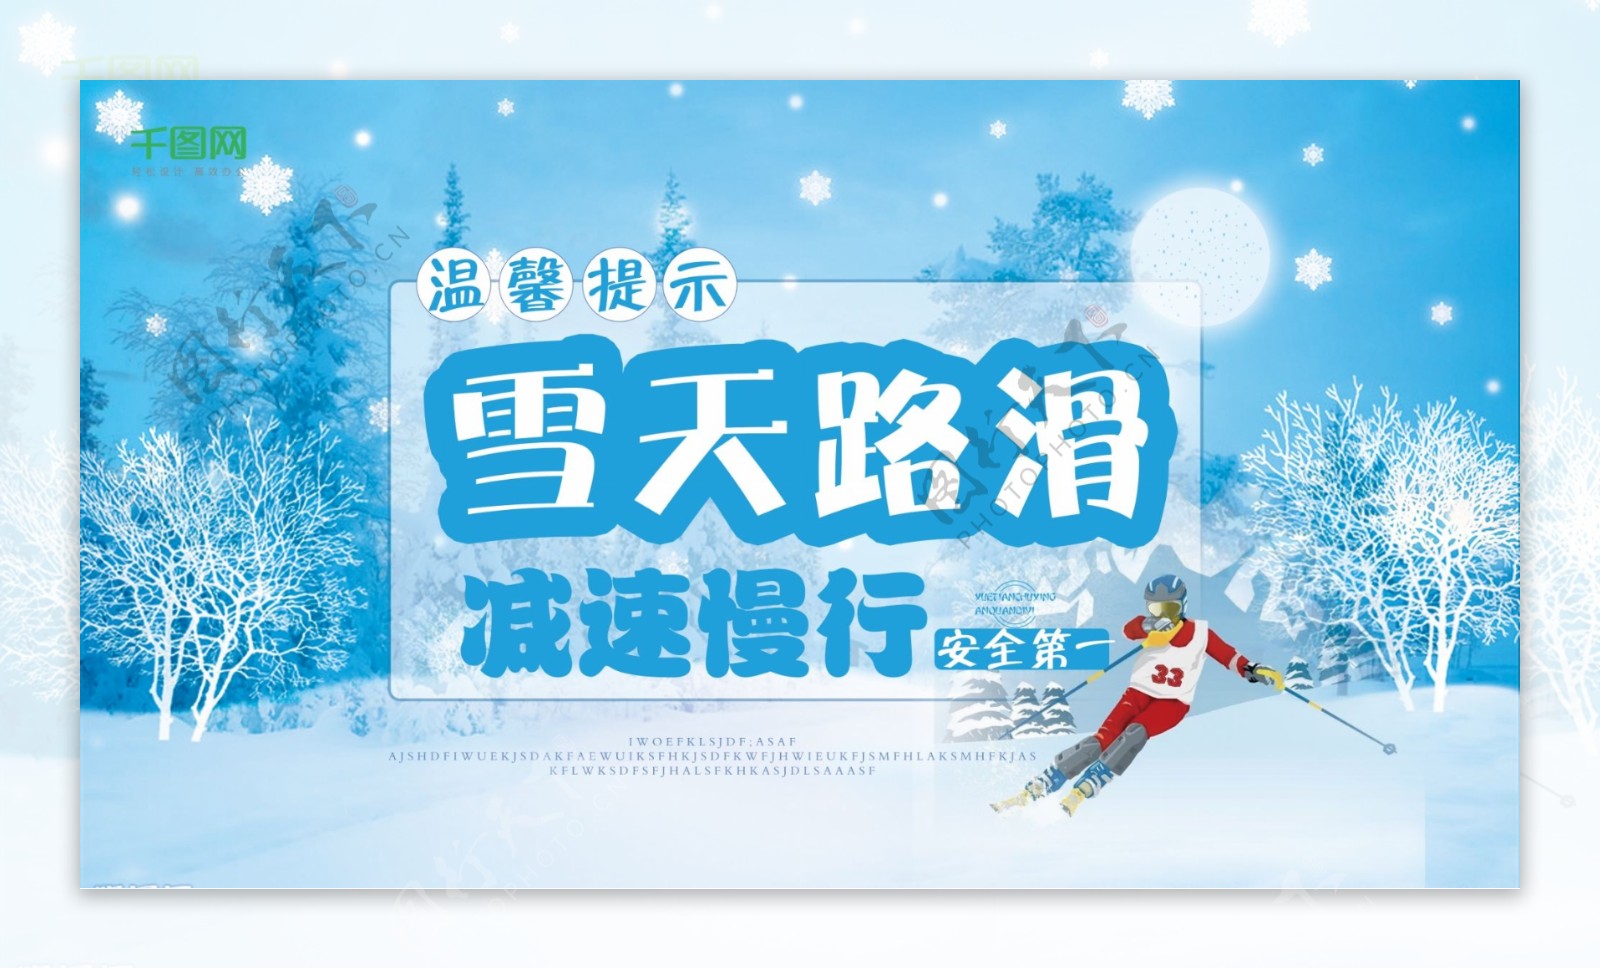 蓝色简约温馨提示雪天路滑减速慢行海报